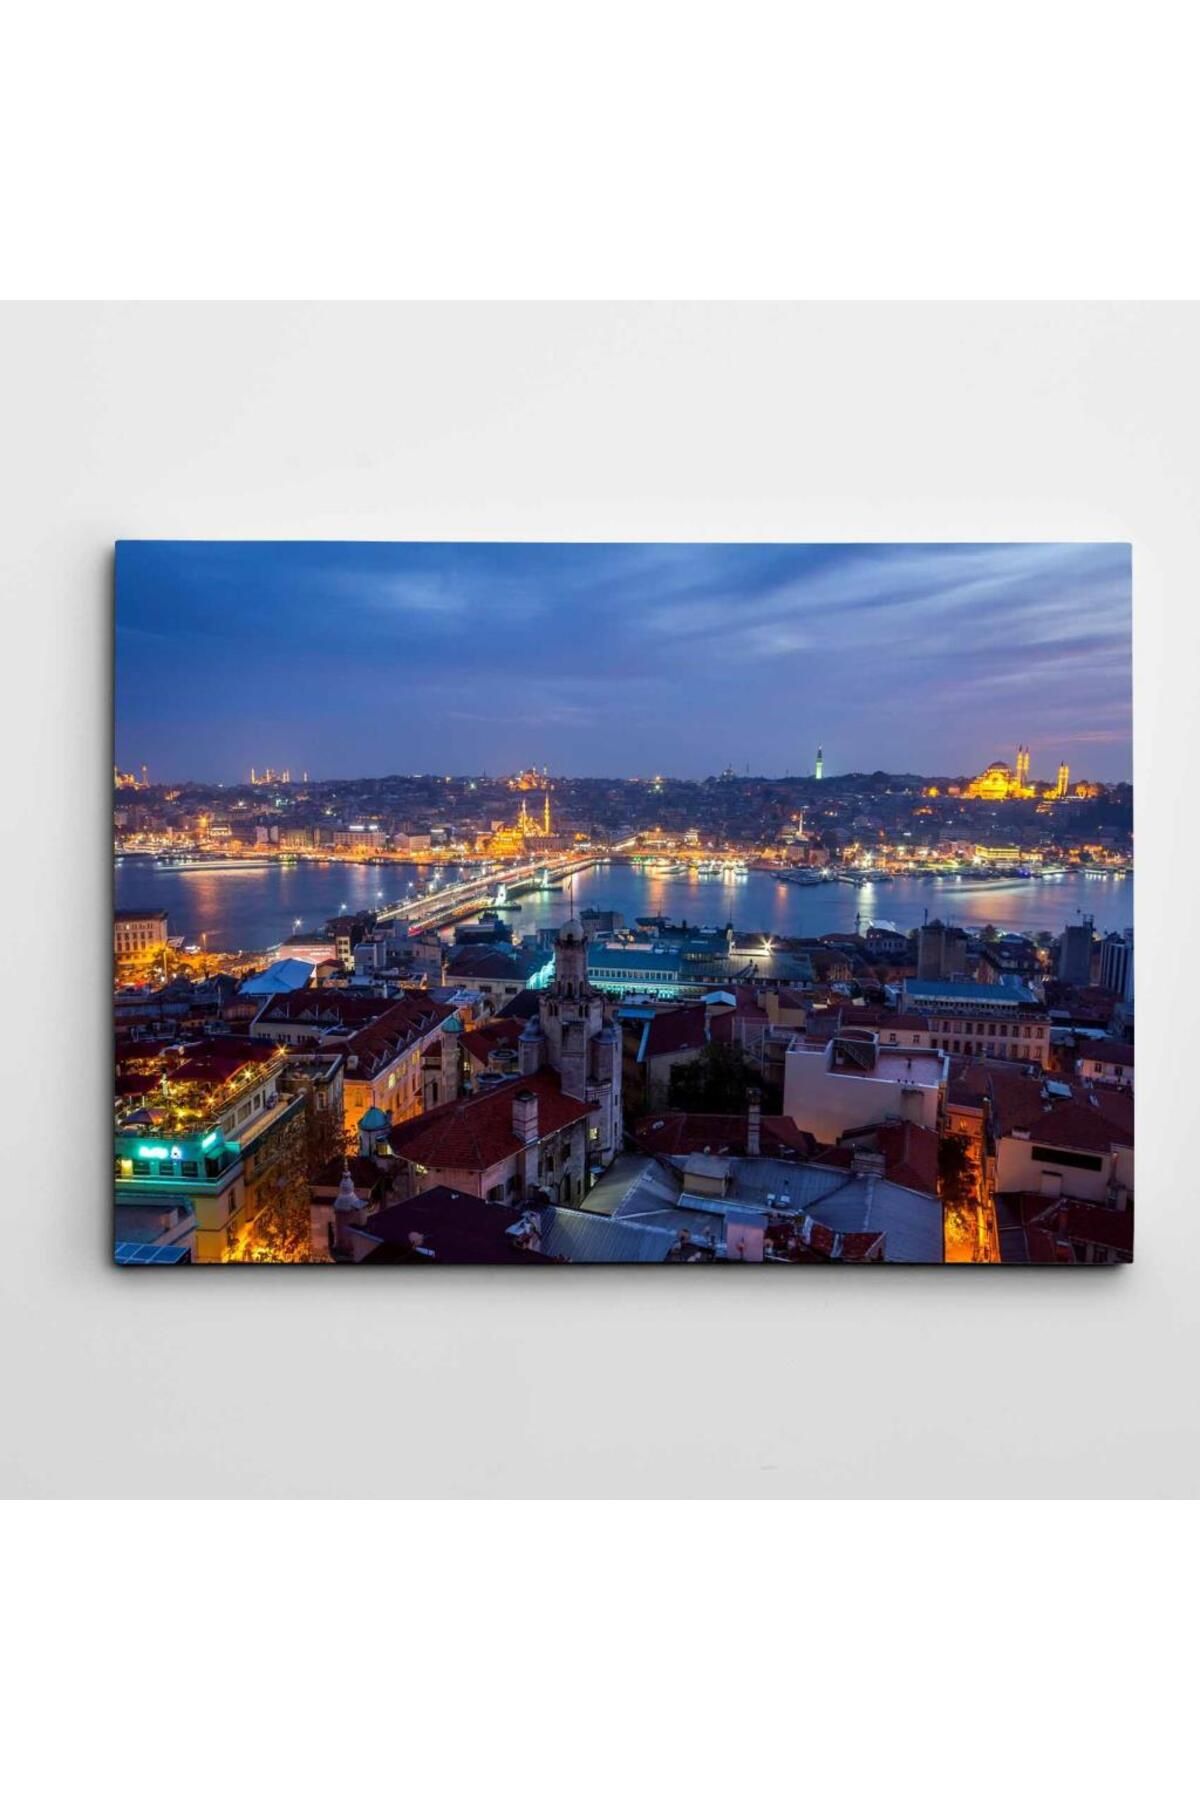 artefoni İstanbul Haliç Gece Manzarası Dekoratif Kanvas Tablo 50 x 70 CM